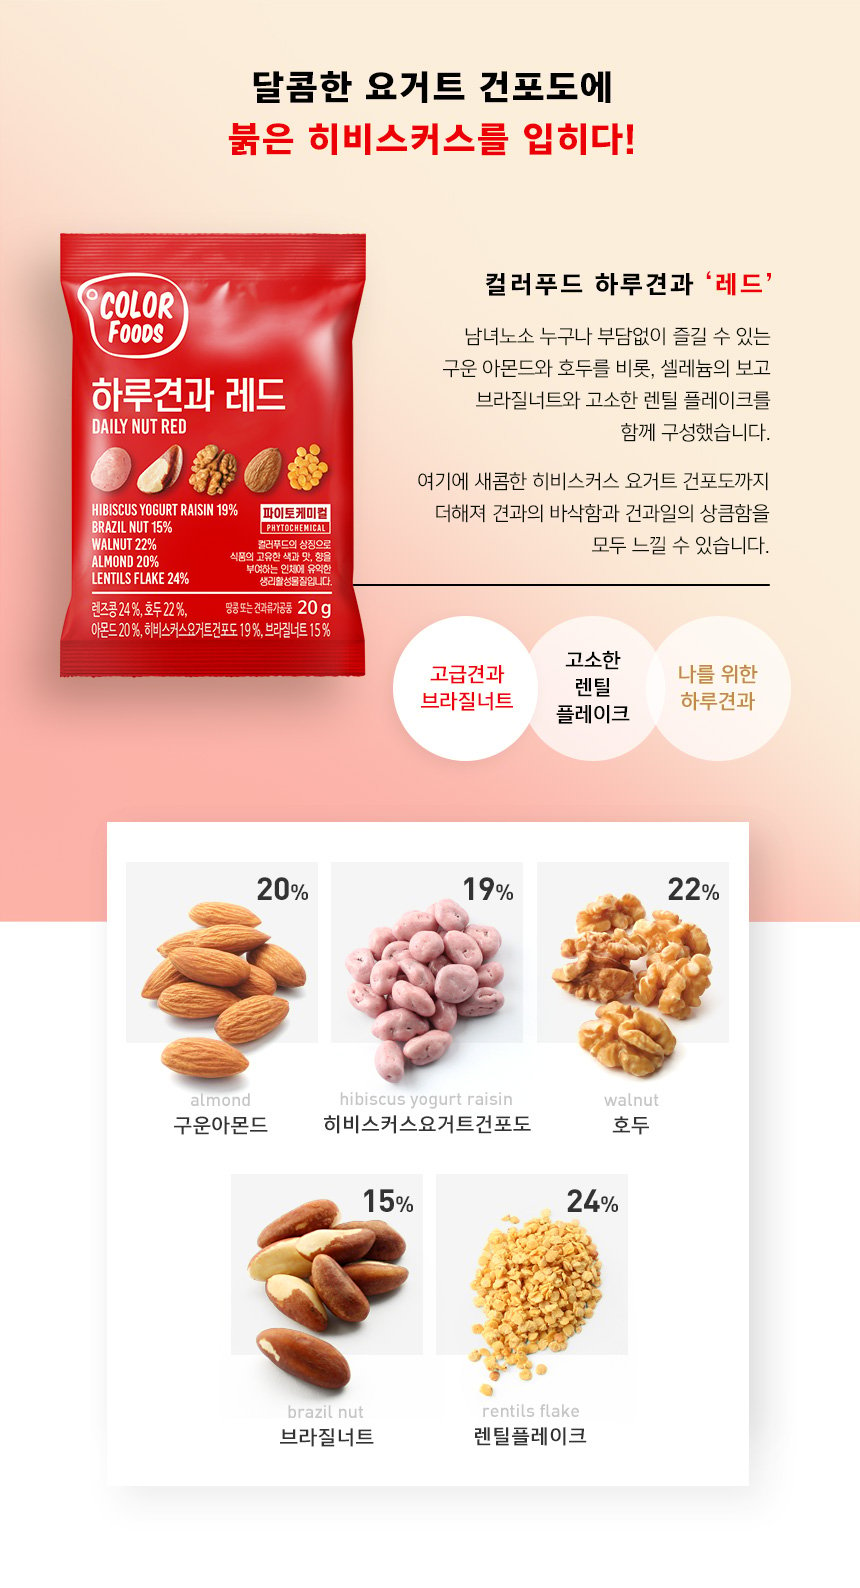 韓國食品-[Color Foods] 每日堅果 [紅色] 20g